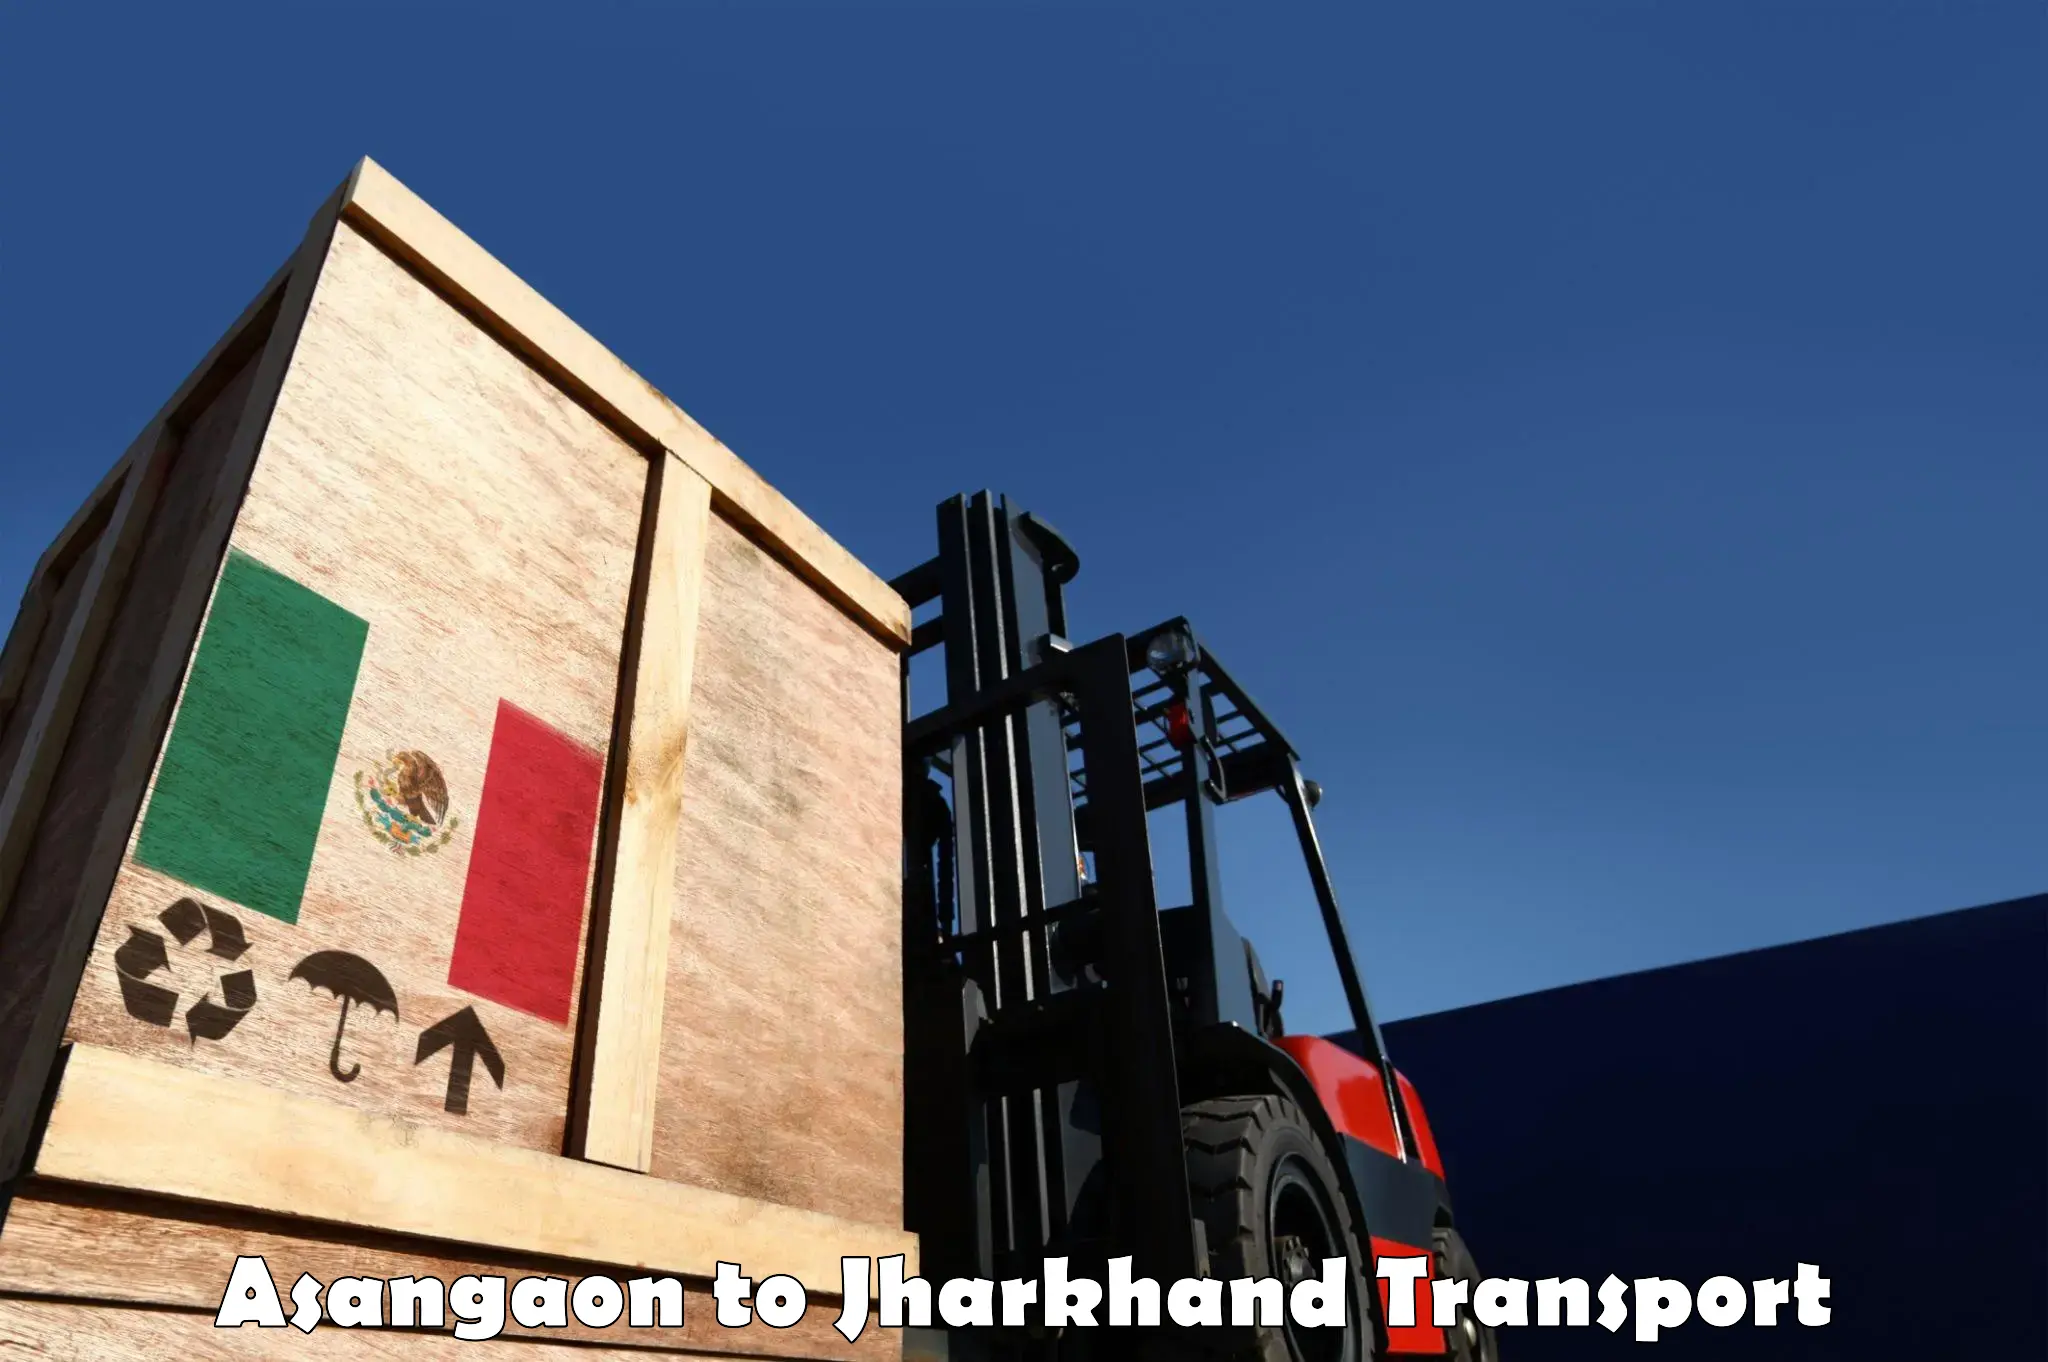 Daily transport service Asangaon to Hariharganj